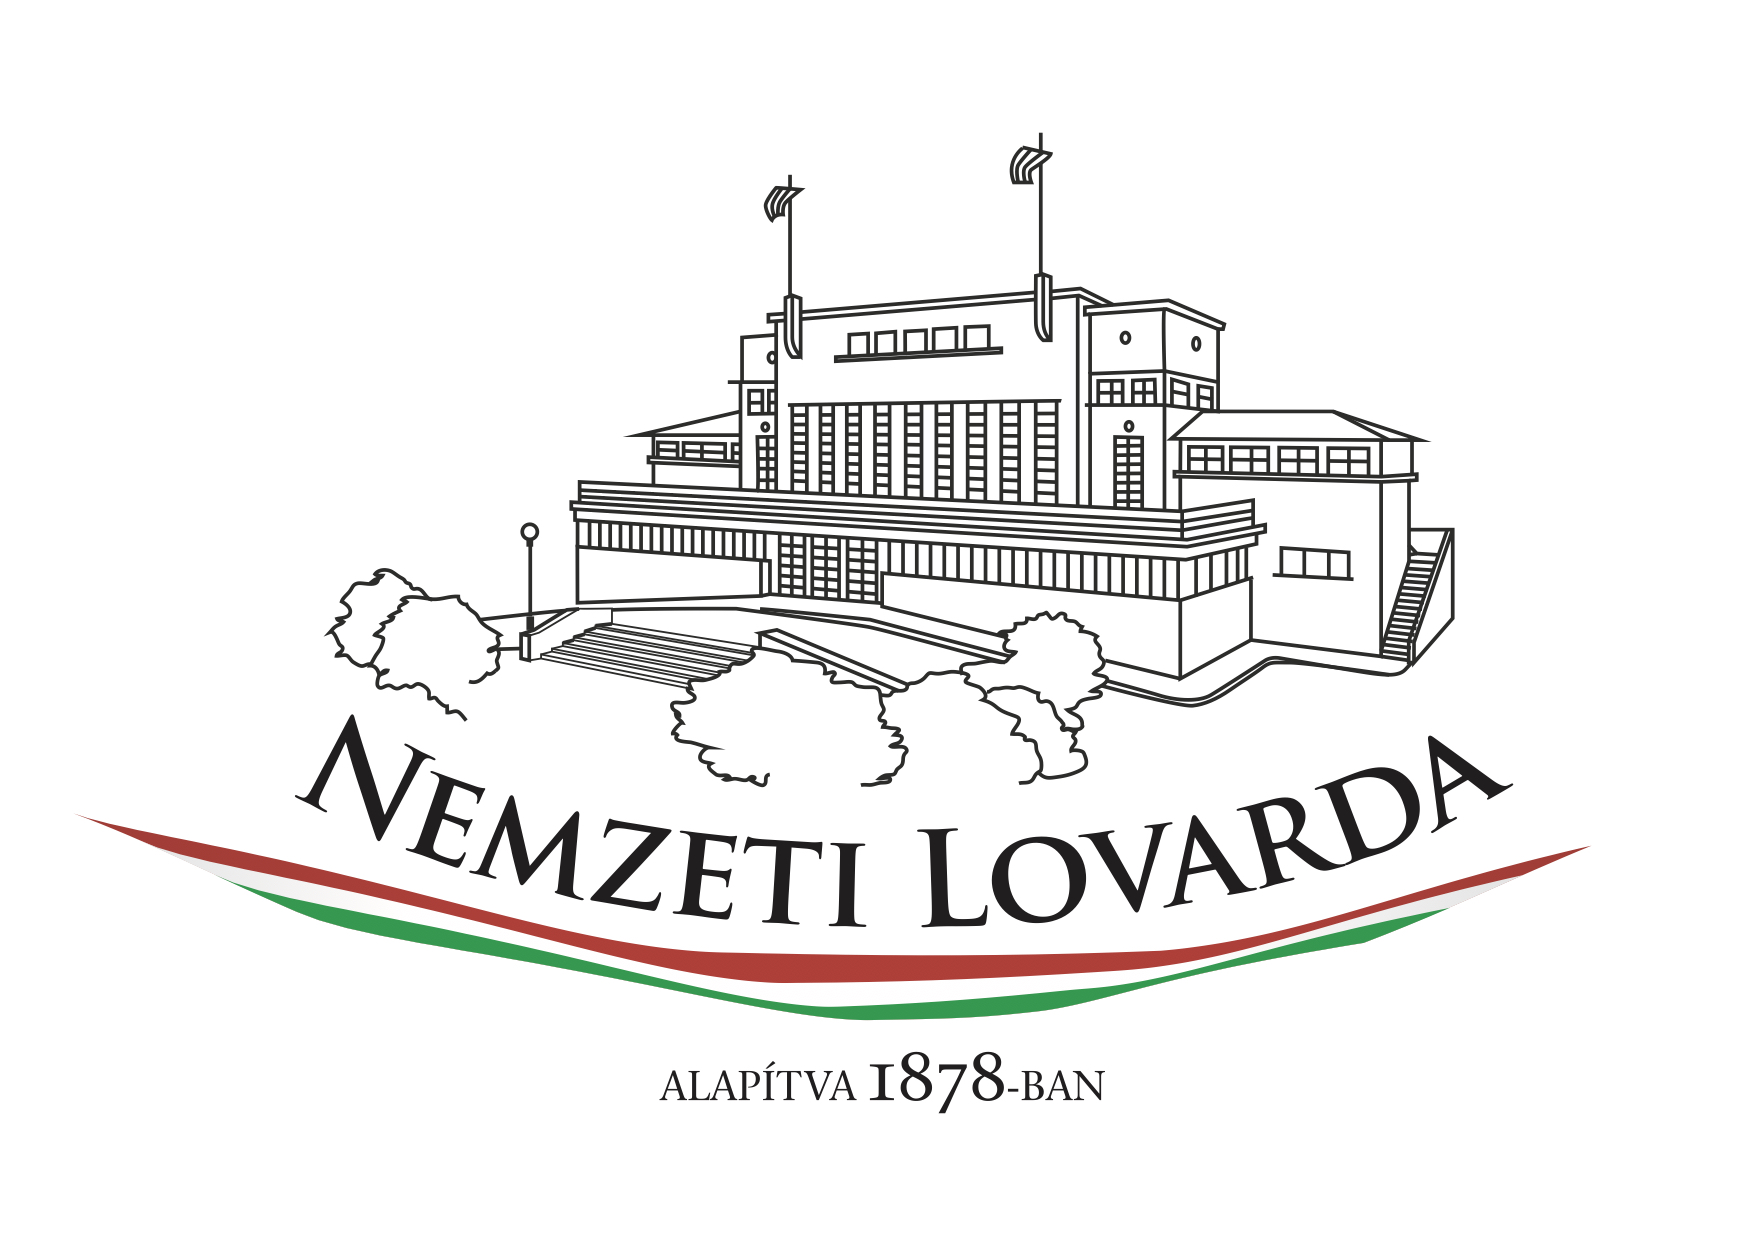 Nemzeti Lovarda Logo Zaszloval